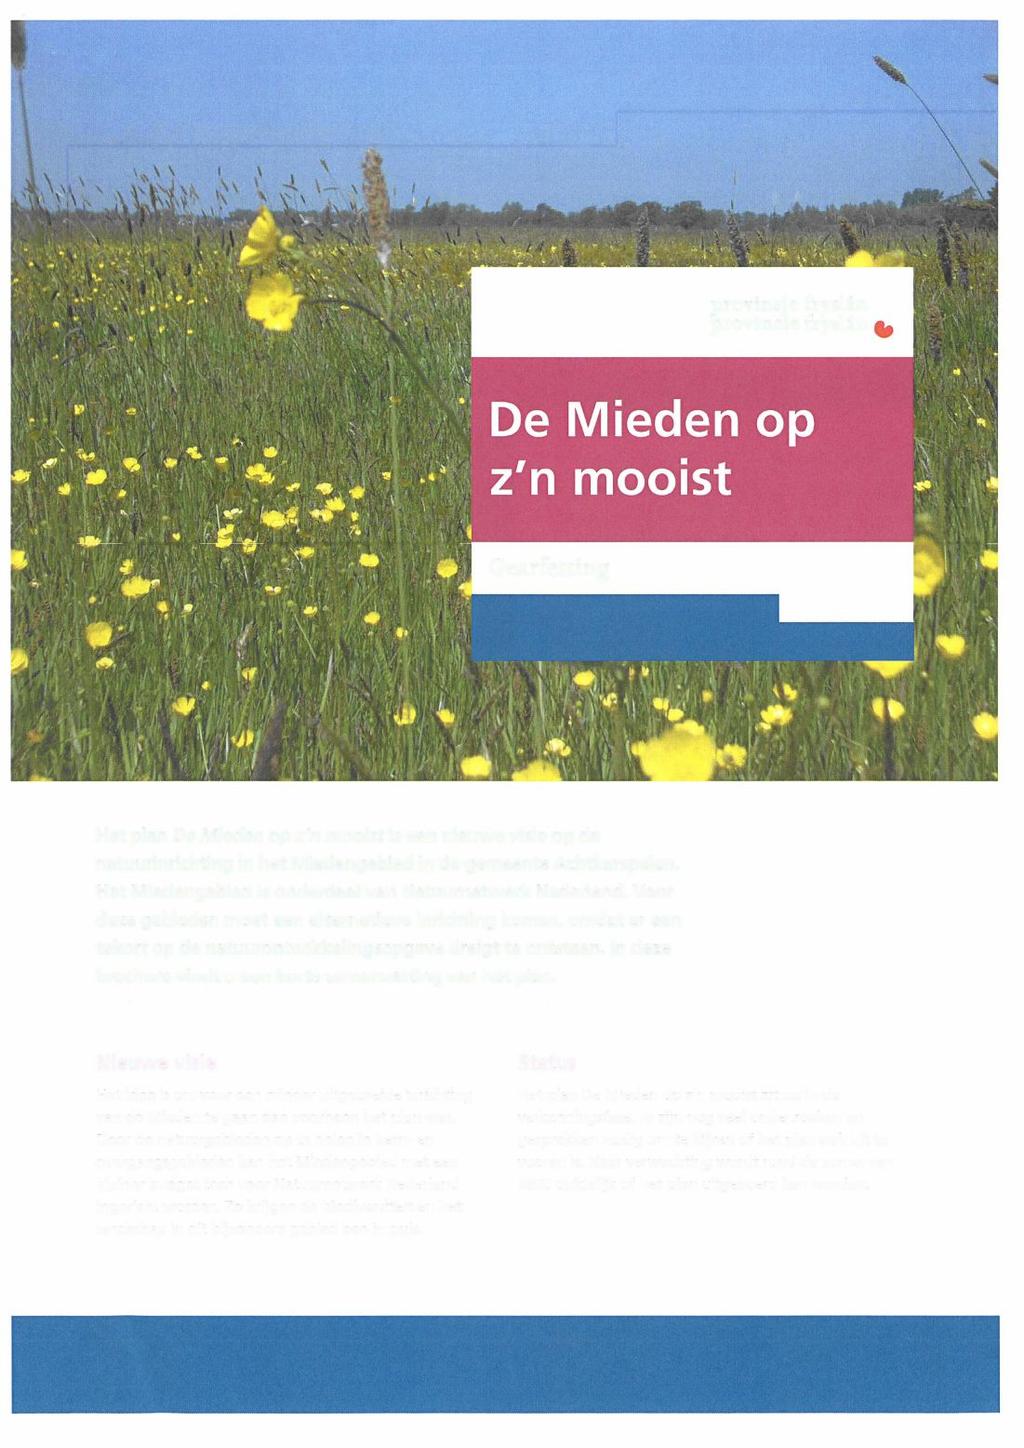 Het plan De Mieden op z'n mooist is een nieuwe visie op de natuurinrichting in het Miedengebied in de gemeente Achtkarspelen.